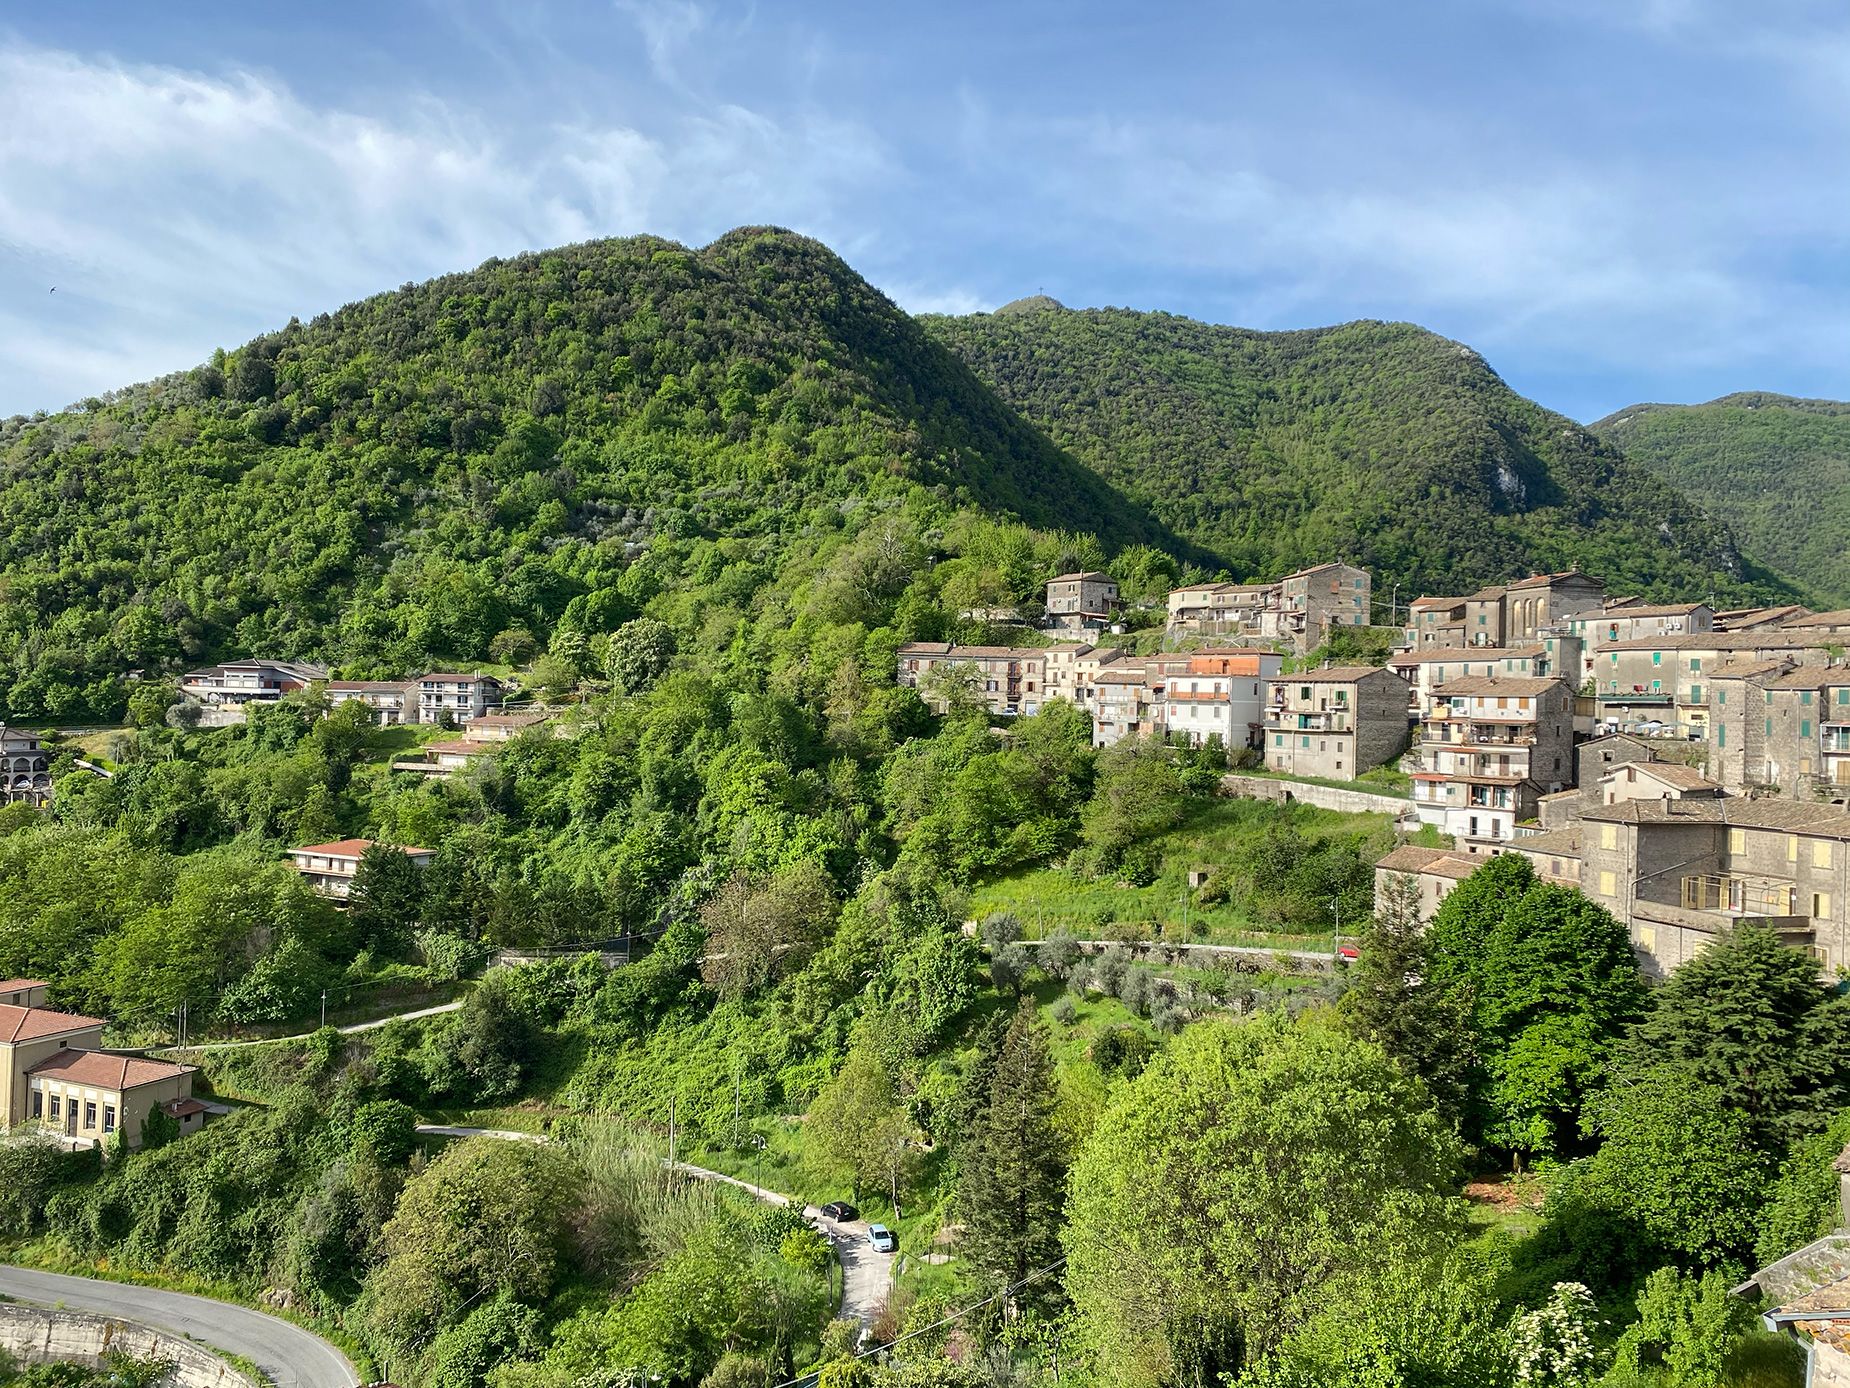 Kota di Italia ini sedang berjuang untuk menjual rumah seharga satu euro